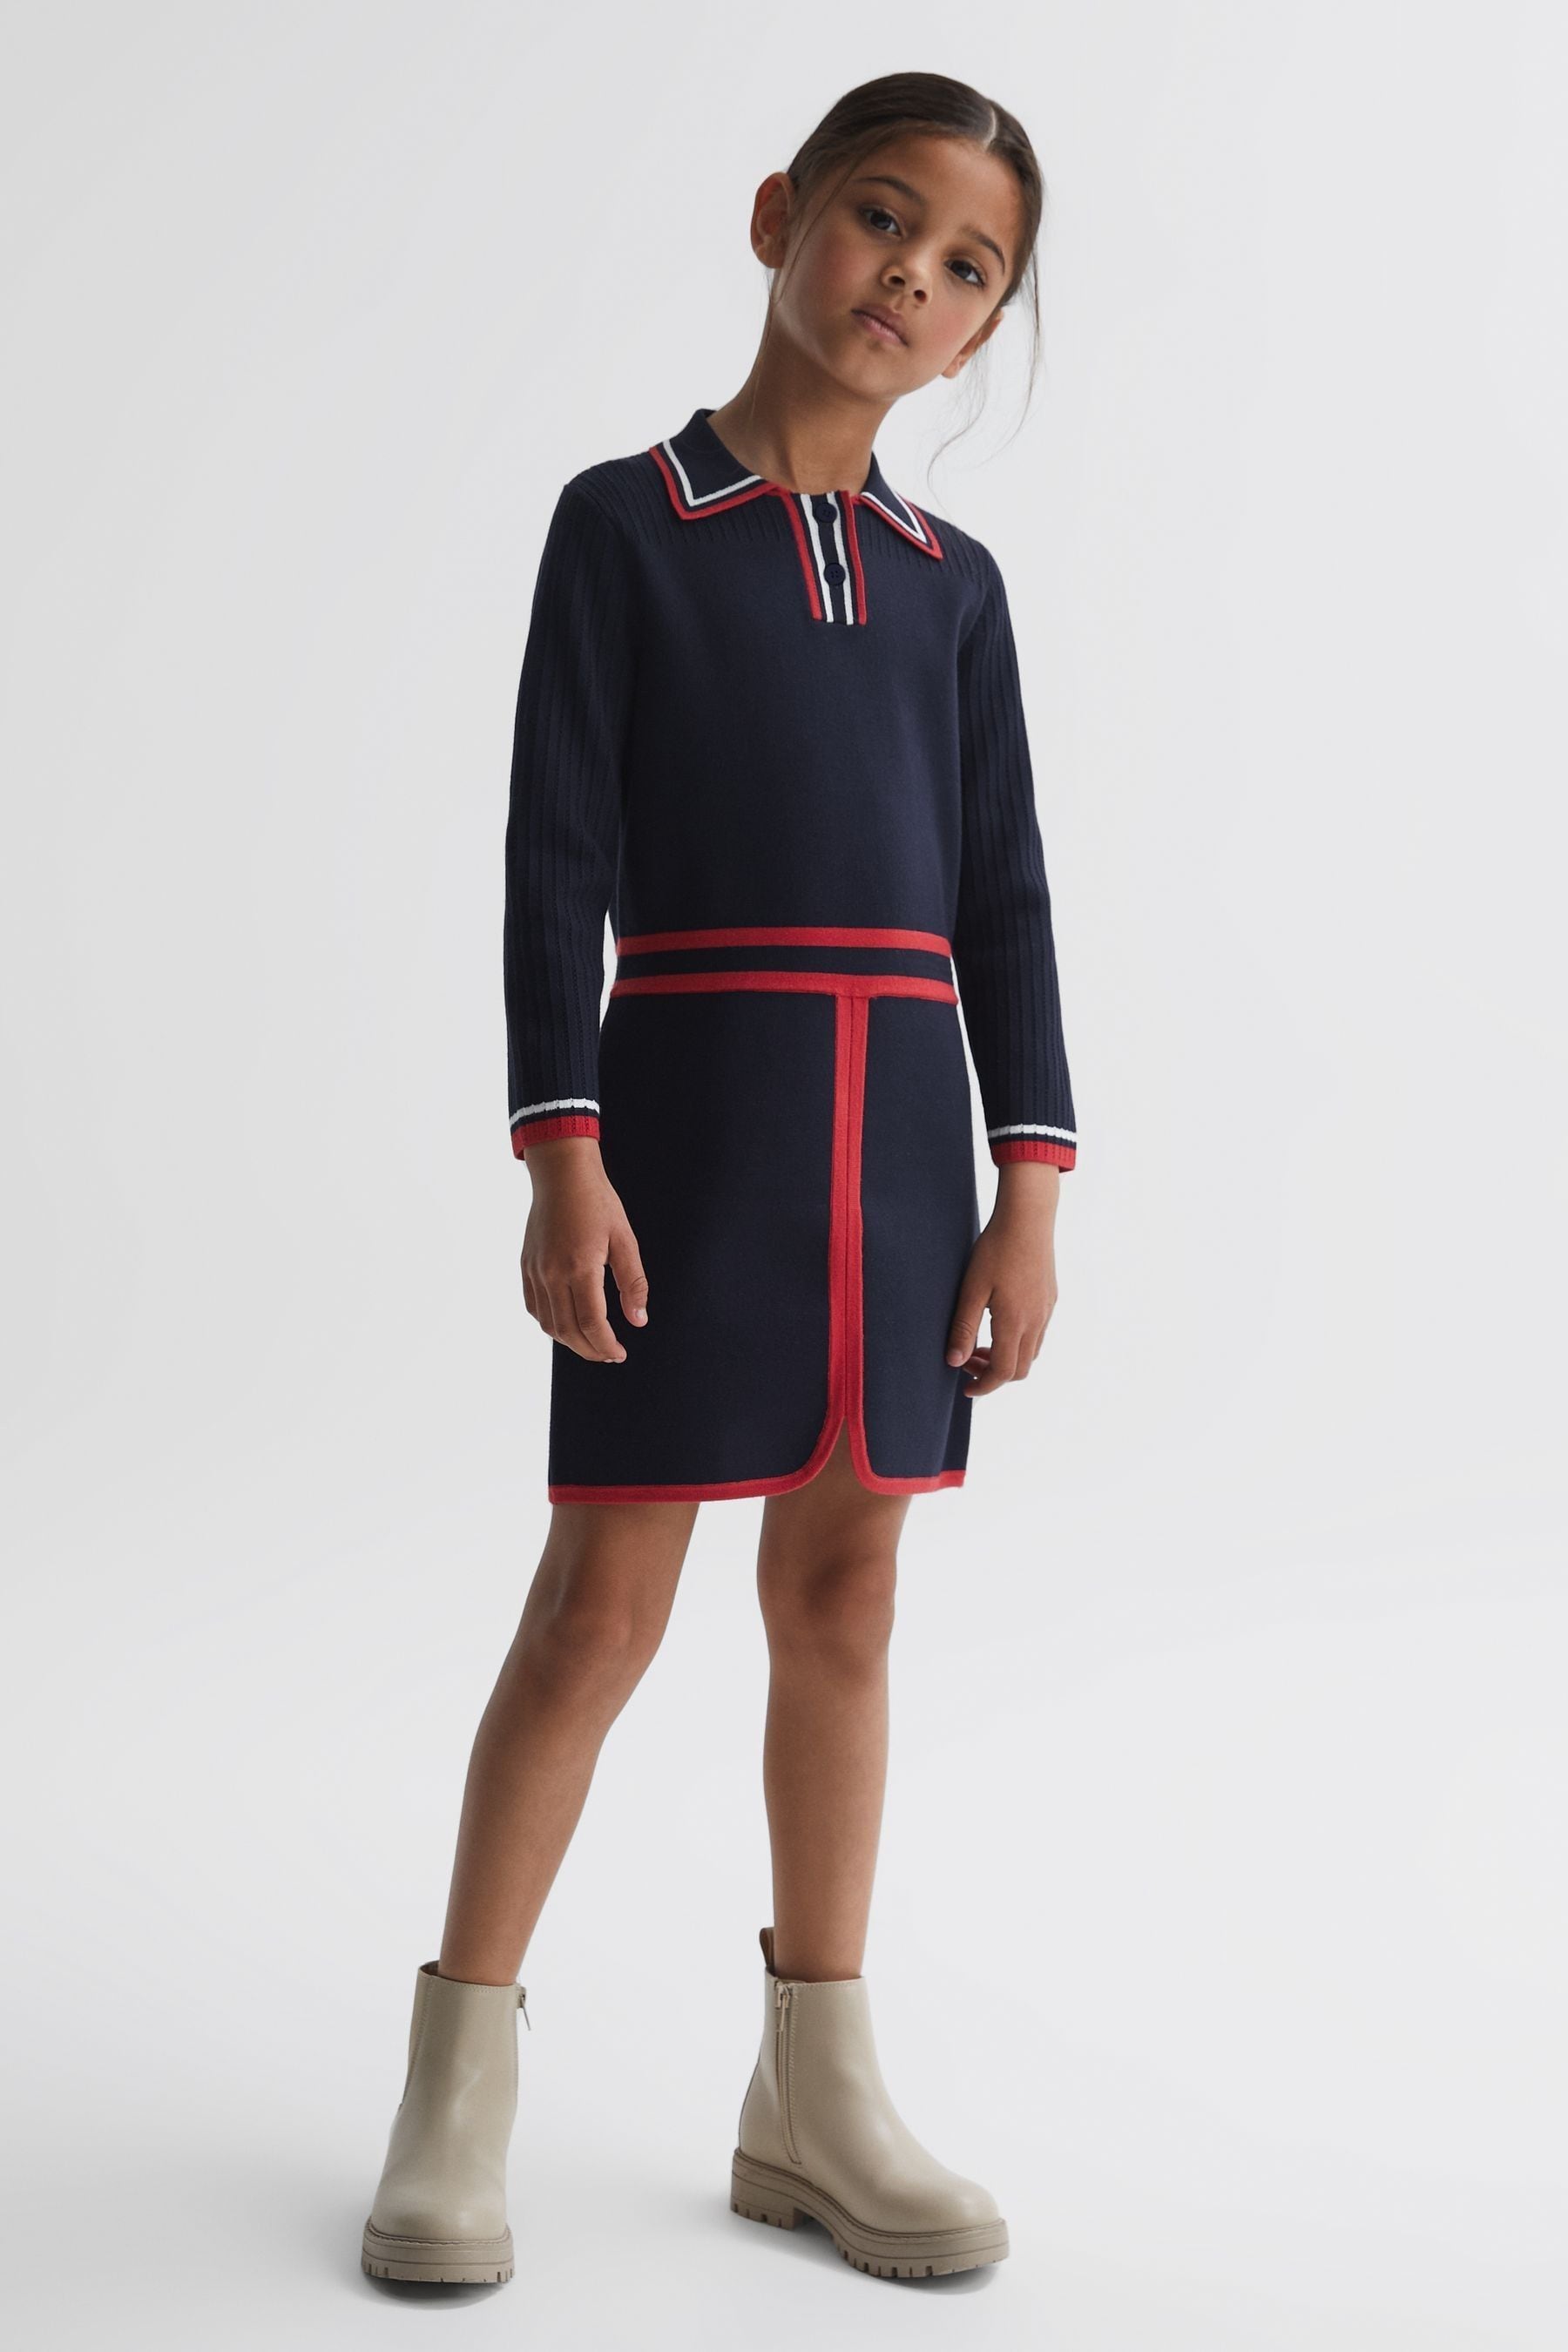 Reiss Kids' Ruby - Navy Senior Knitted Polo Dress, Uk 9-10 Yrs